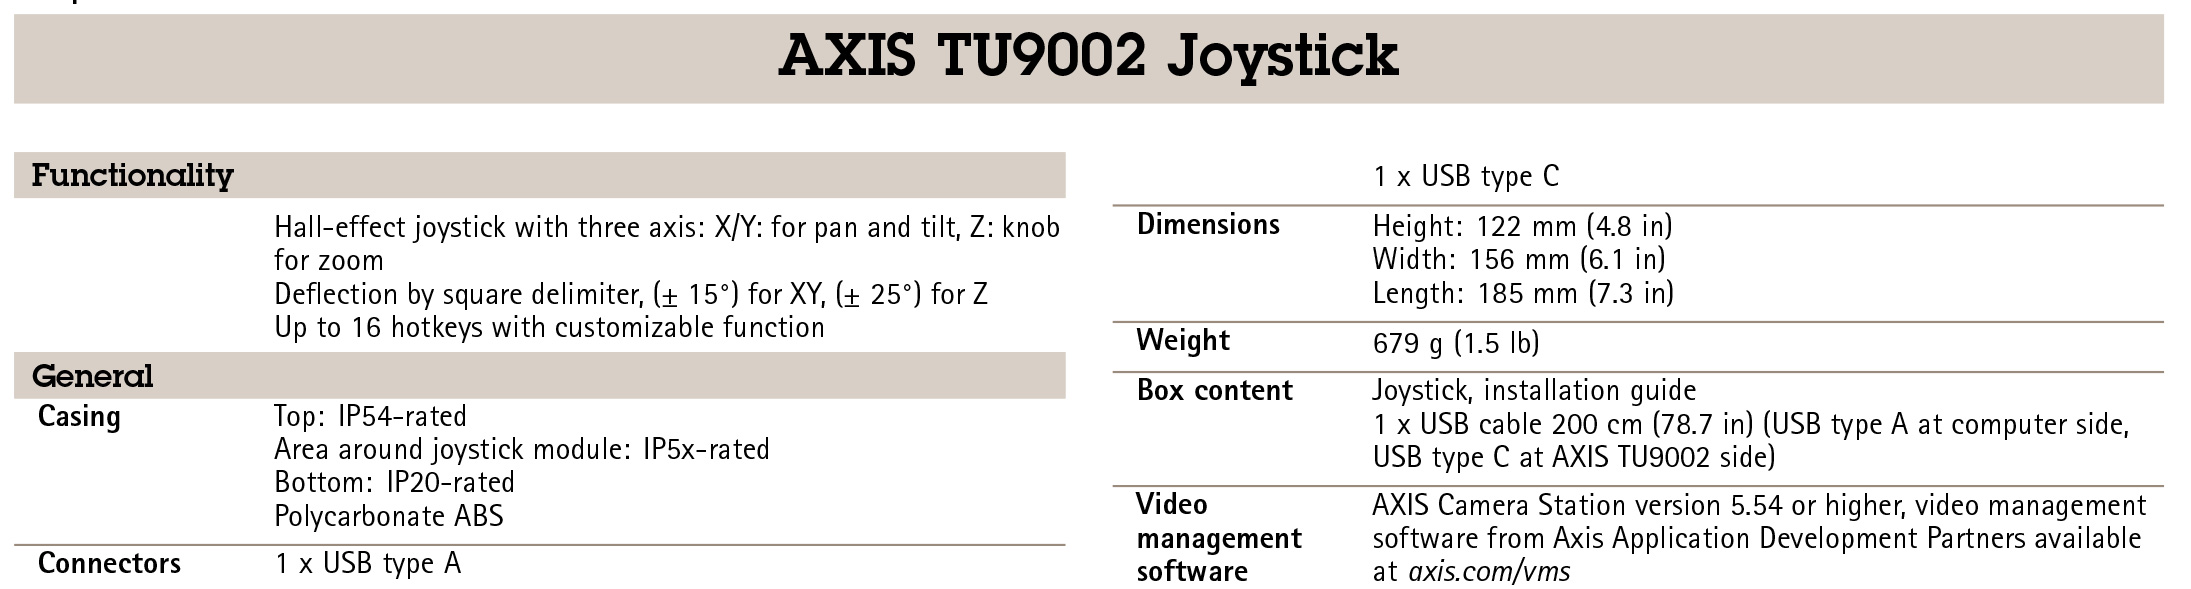 AXIS TU9002 Joystick